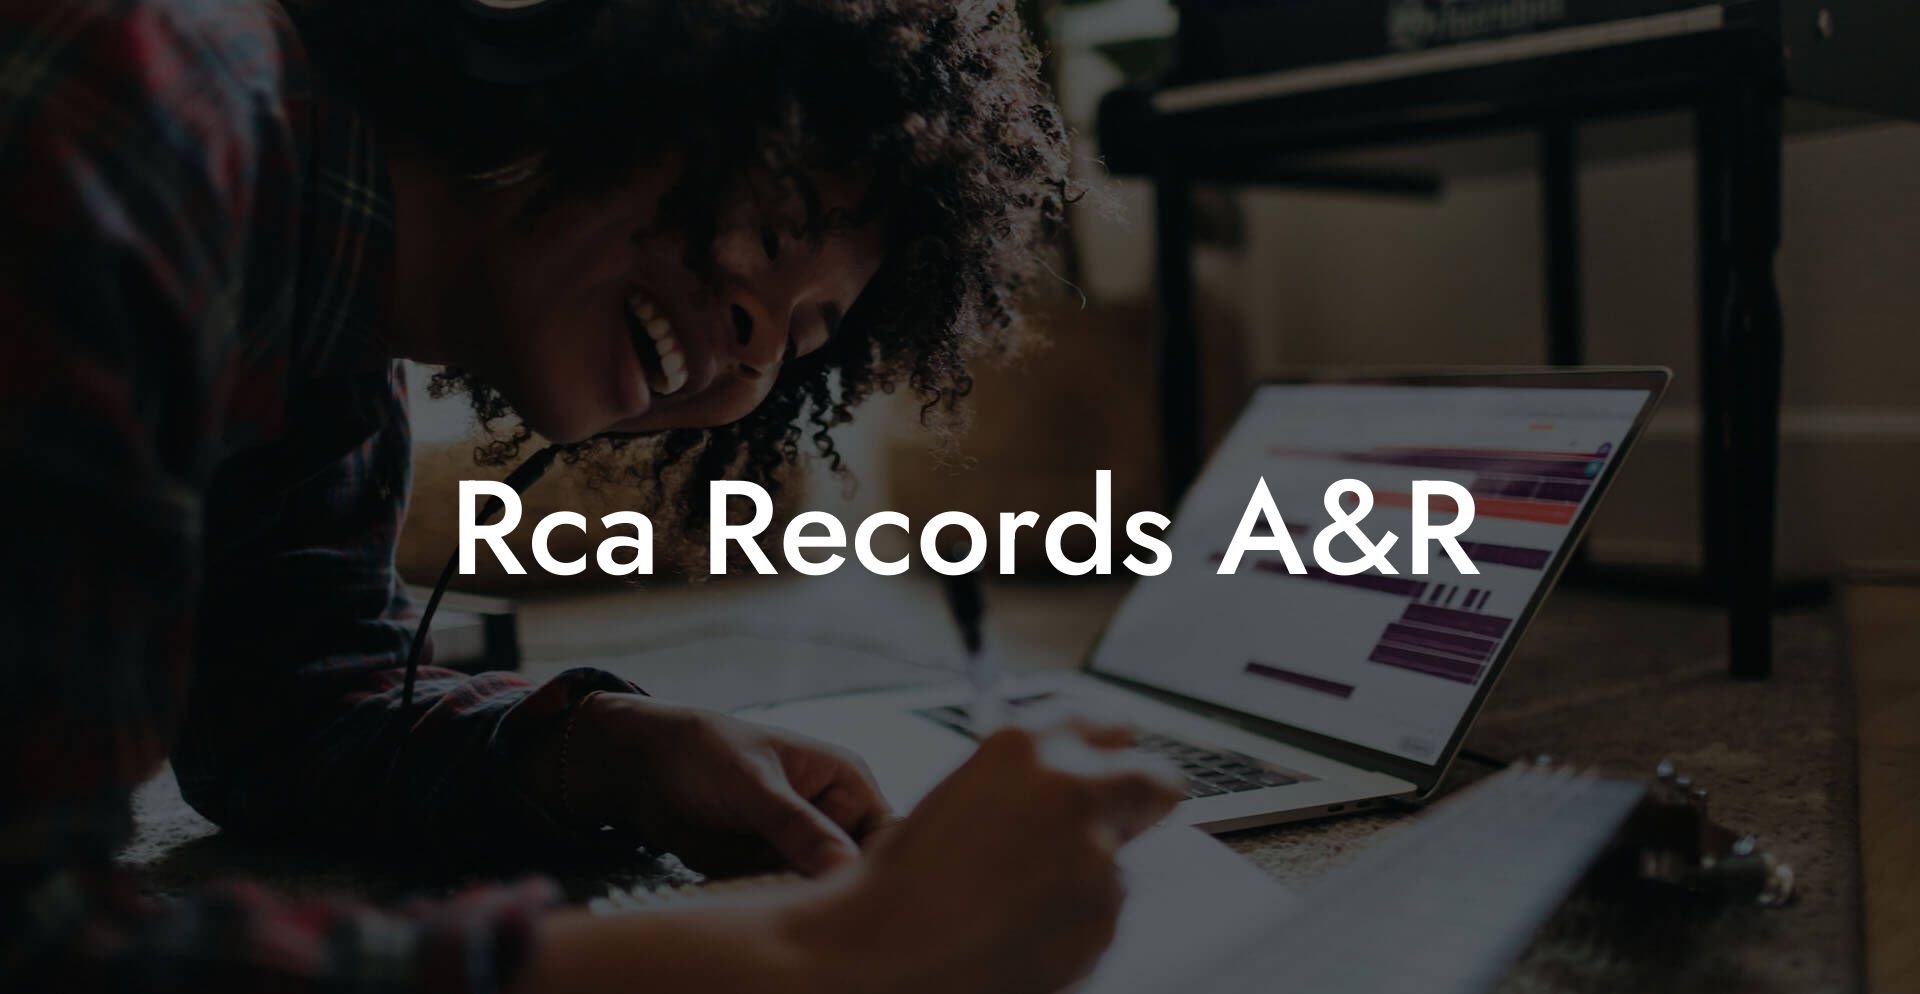 Rca Records A&R